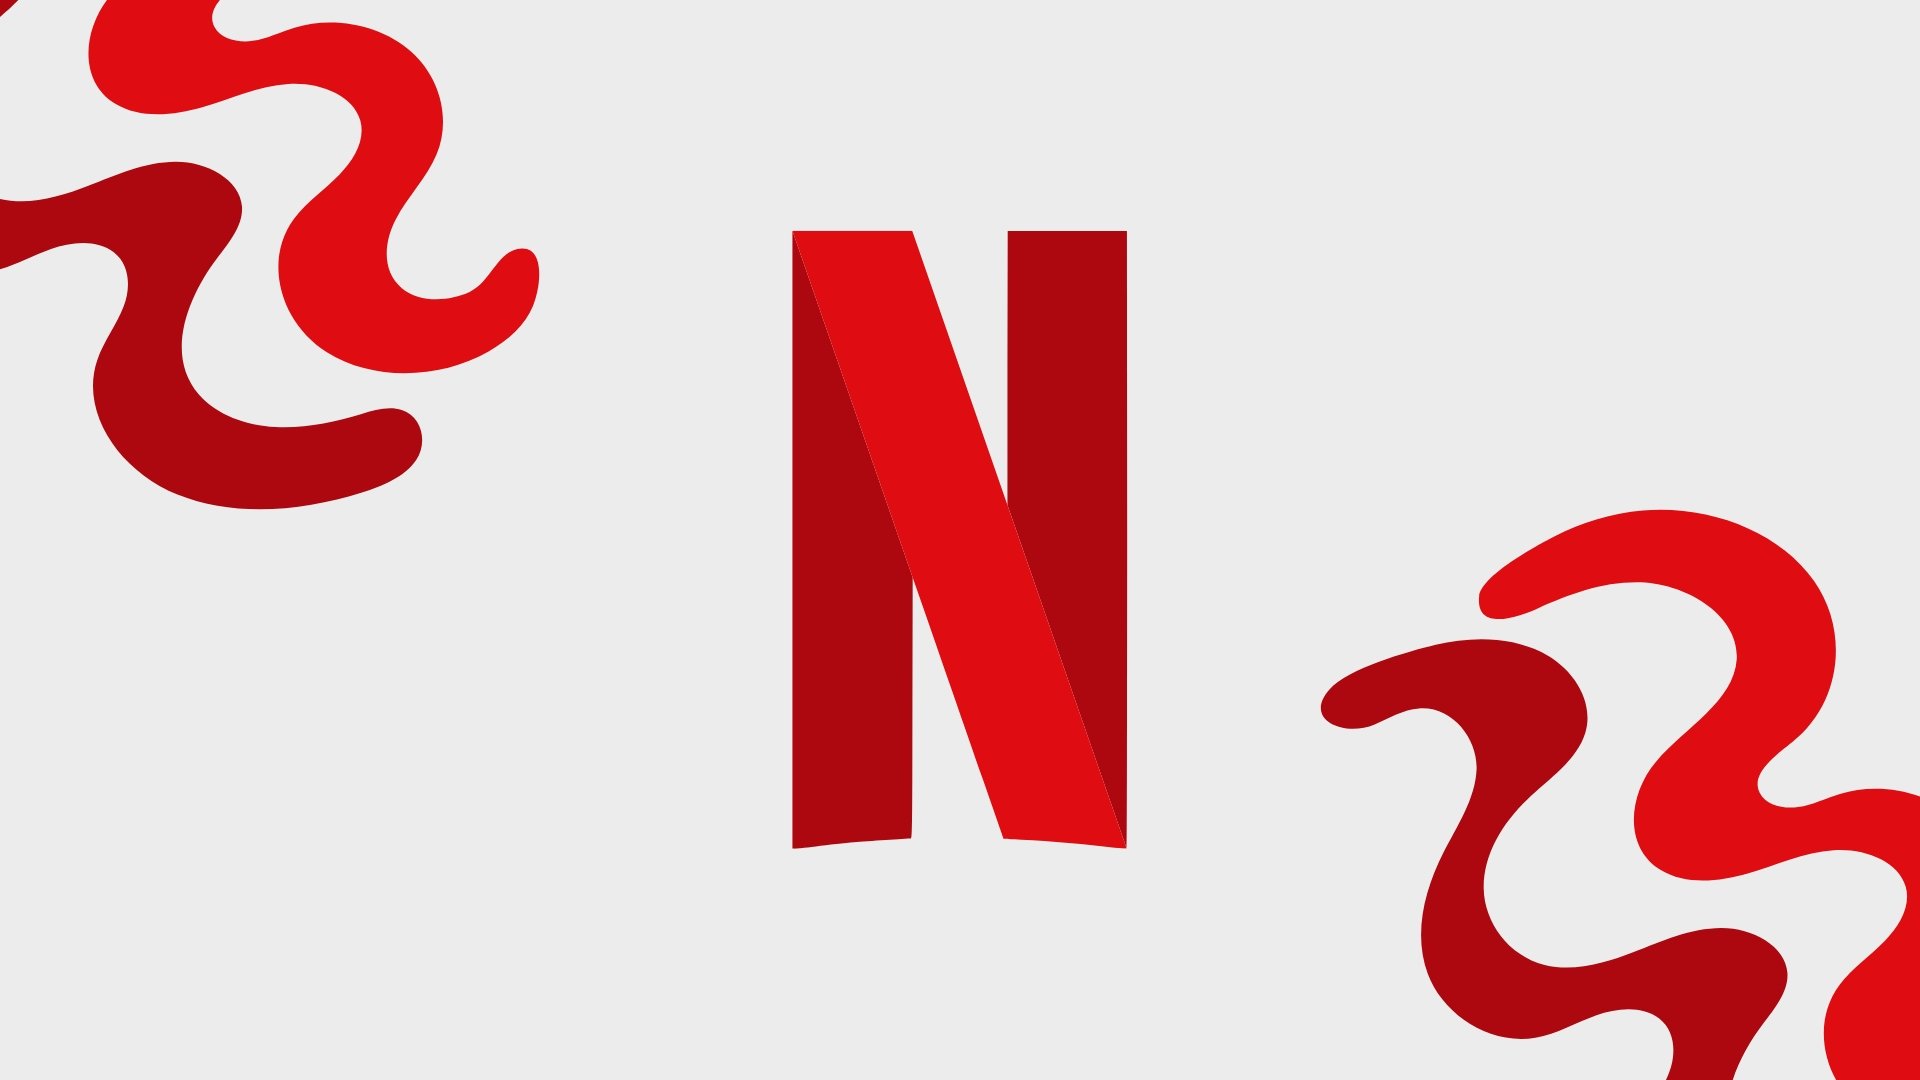 Logo do Netflix no centro da imagem, a vermelho, com linhas irregulares nas bordas